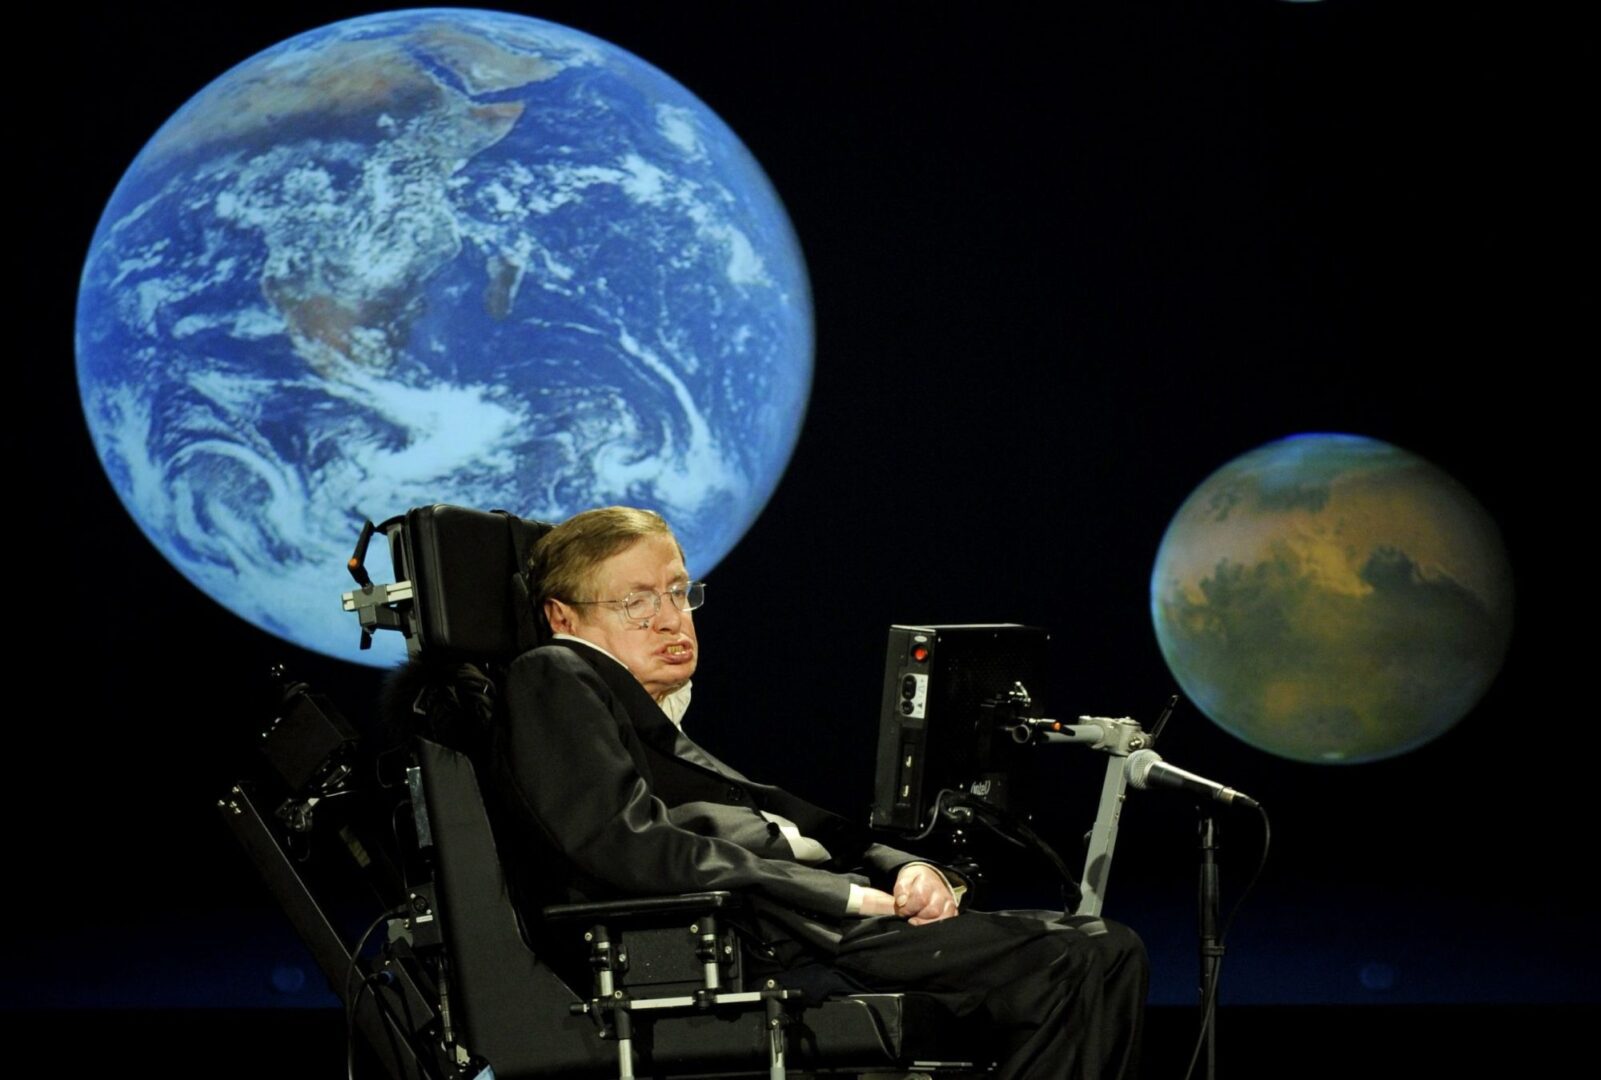 Ez jelenti majd az emberiség végét a Földön - Stephen Hawking jóslata